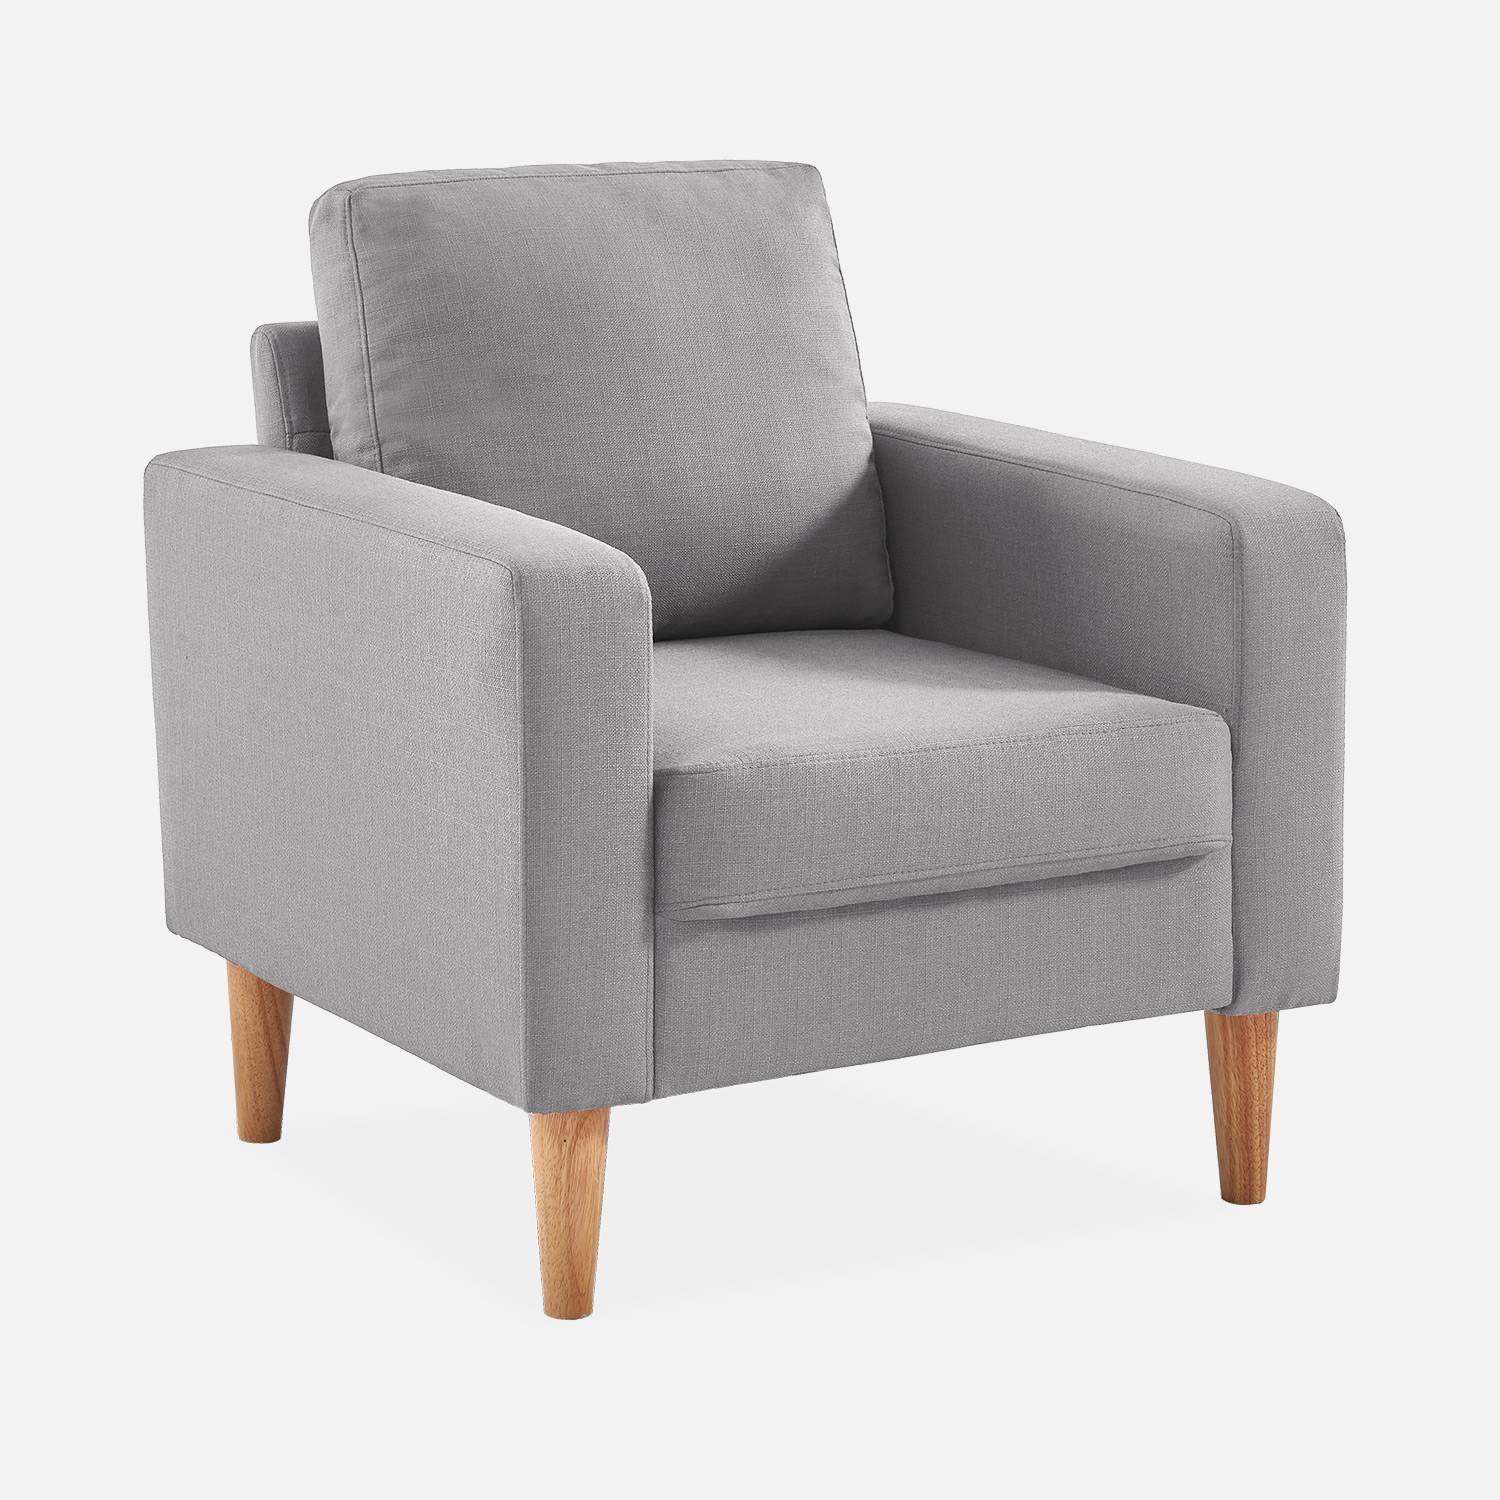 Sillón de tela gris claro - Bjorn - Sillón 1 plaza fijo recto patas madera, sillón escandinavo  ,sweeek,Photo2